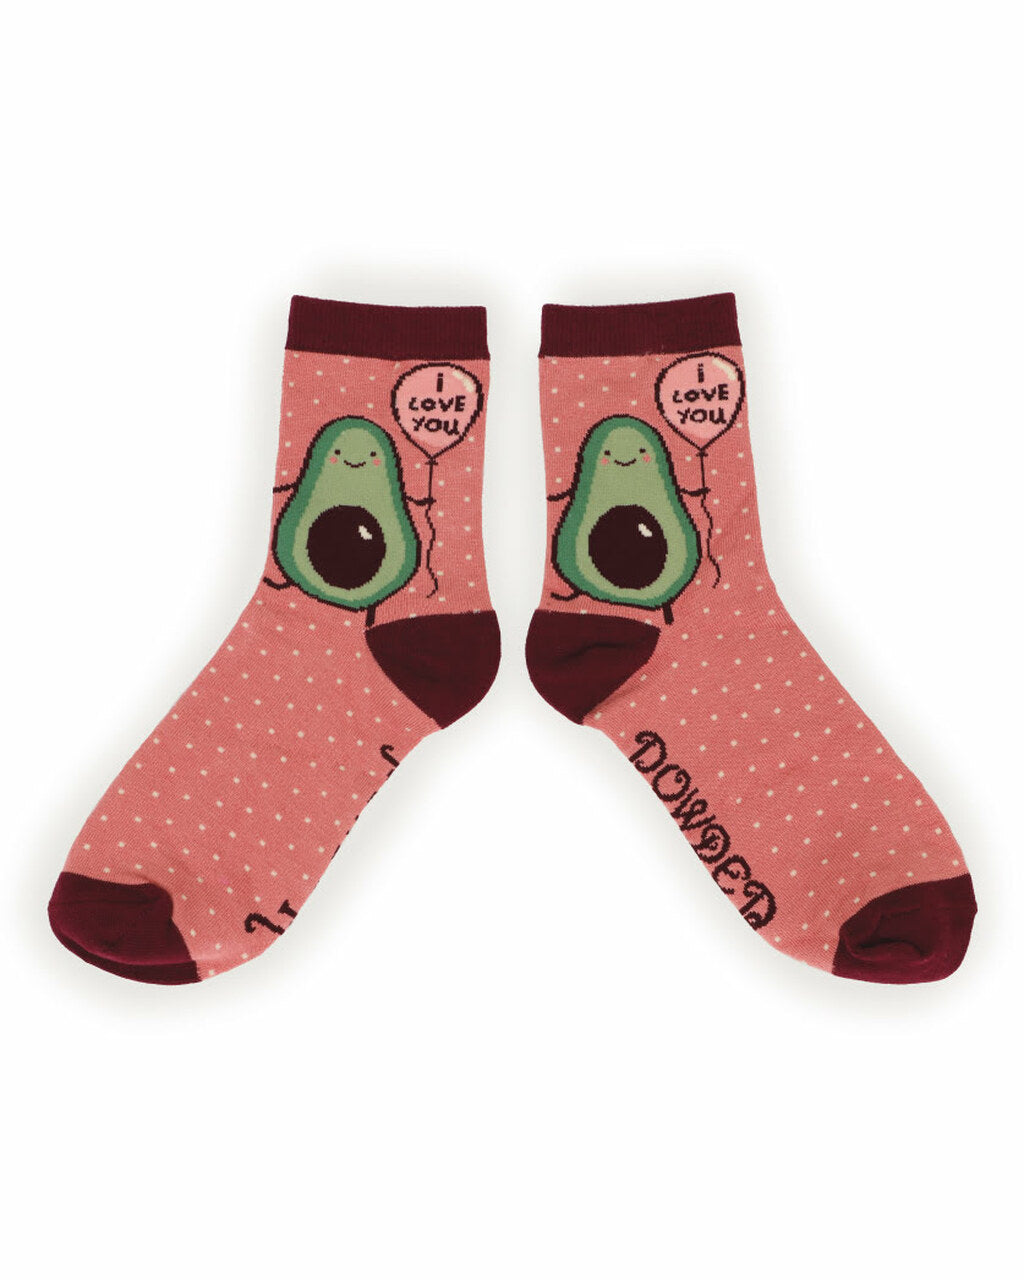 ‘I Love You’ Avocado Ankle Socks